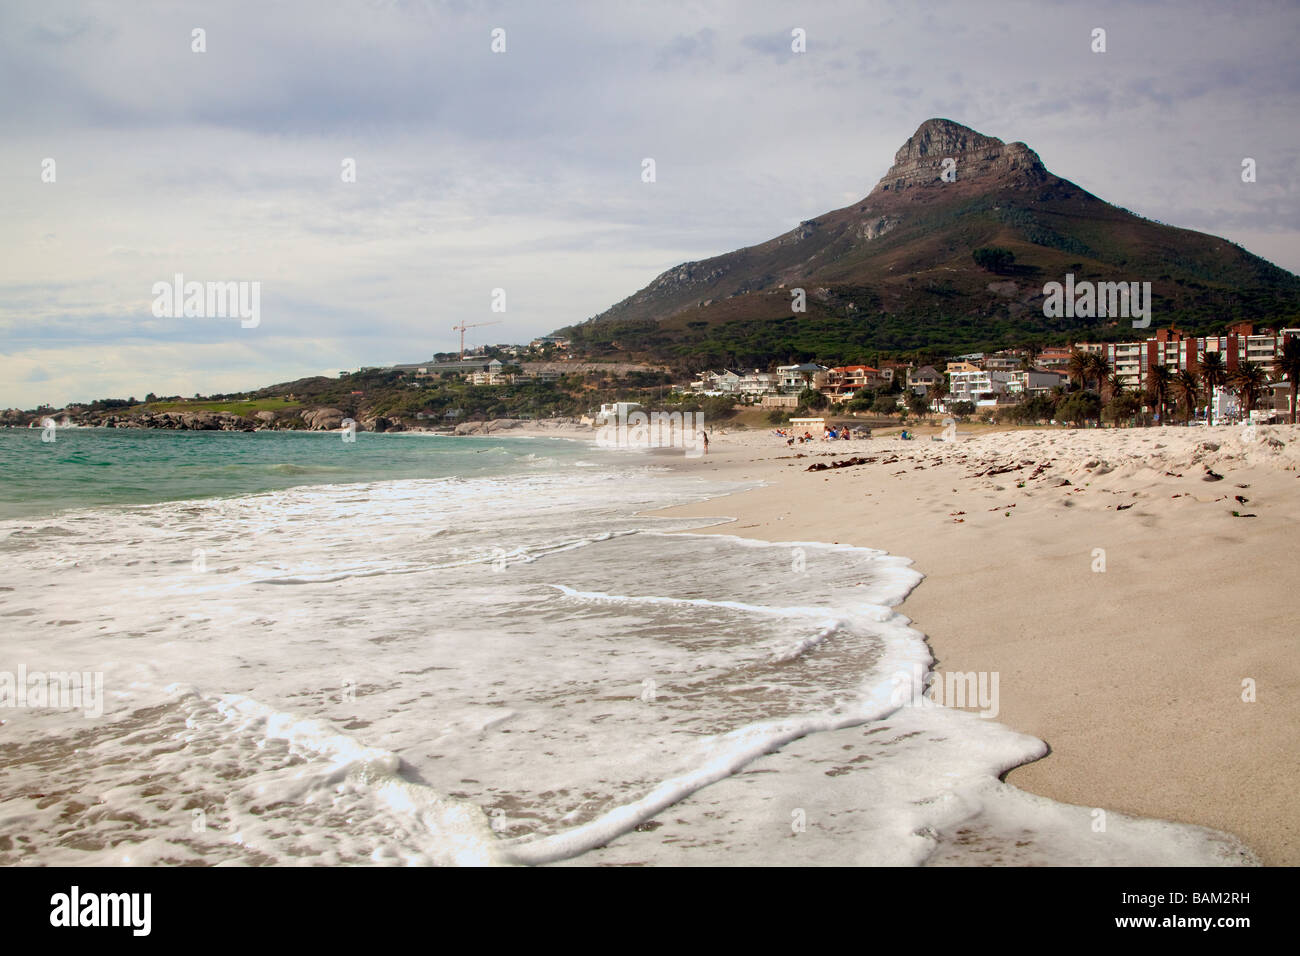 Afficher le long de la plage de surf et de montagne à Camps Bay, Cape Town, Afrique du Sud Banque D'Images